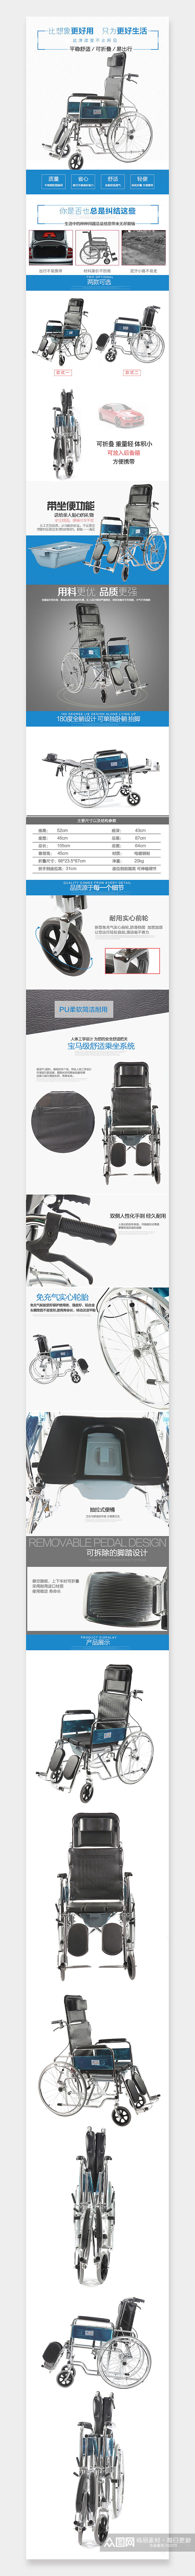 可折叠医用轮椅详情页素材